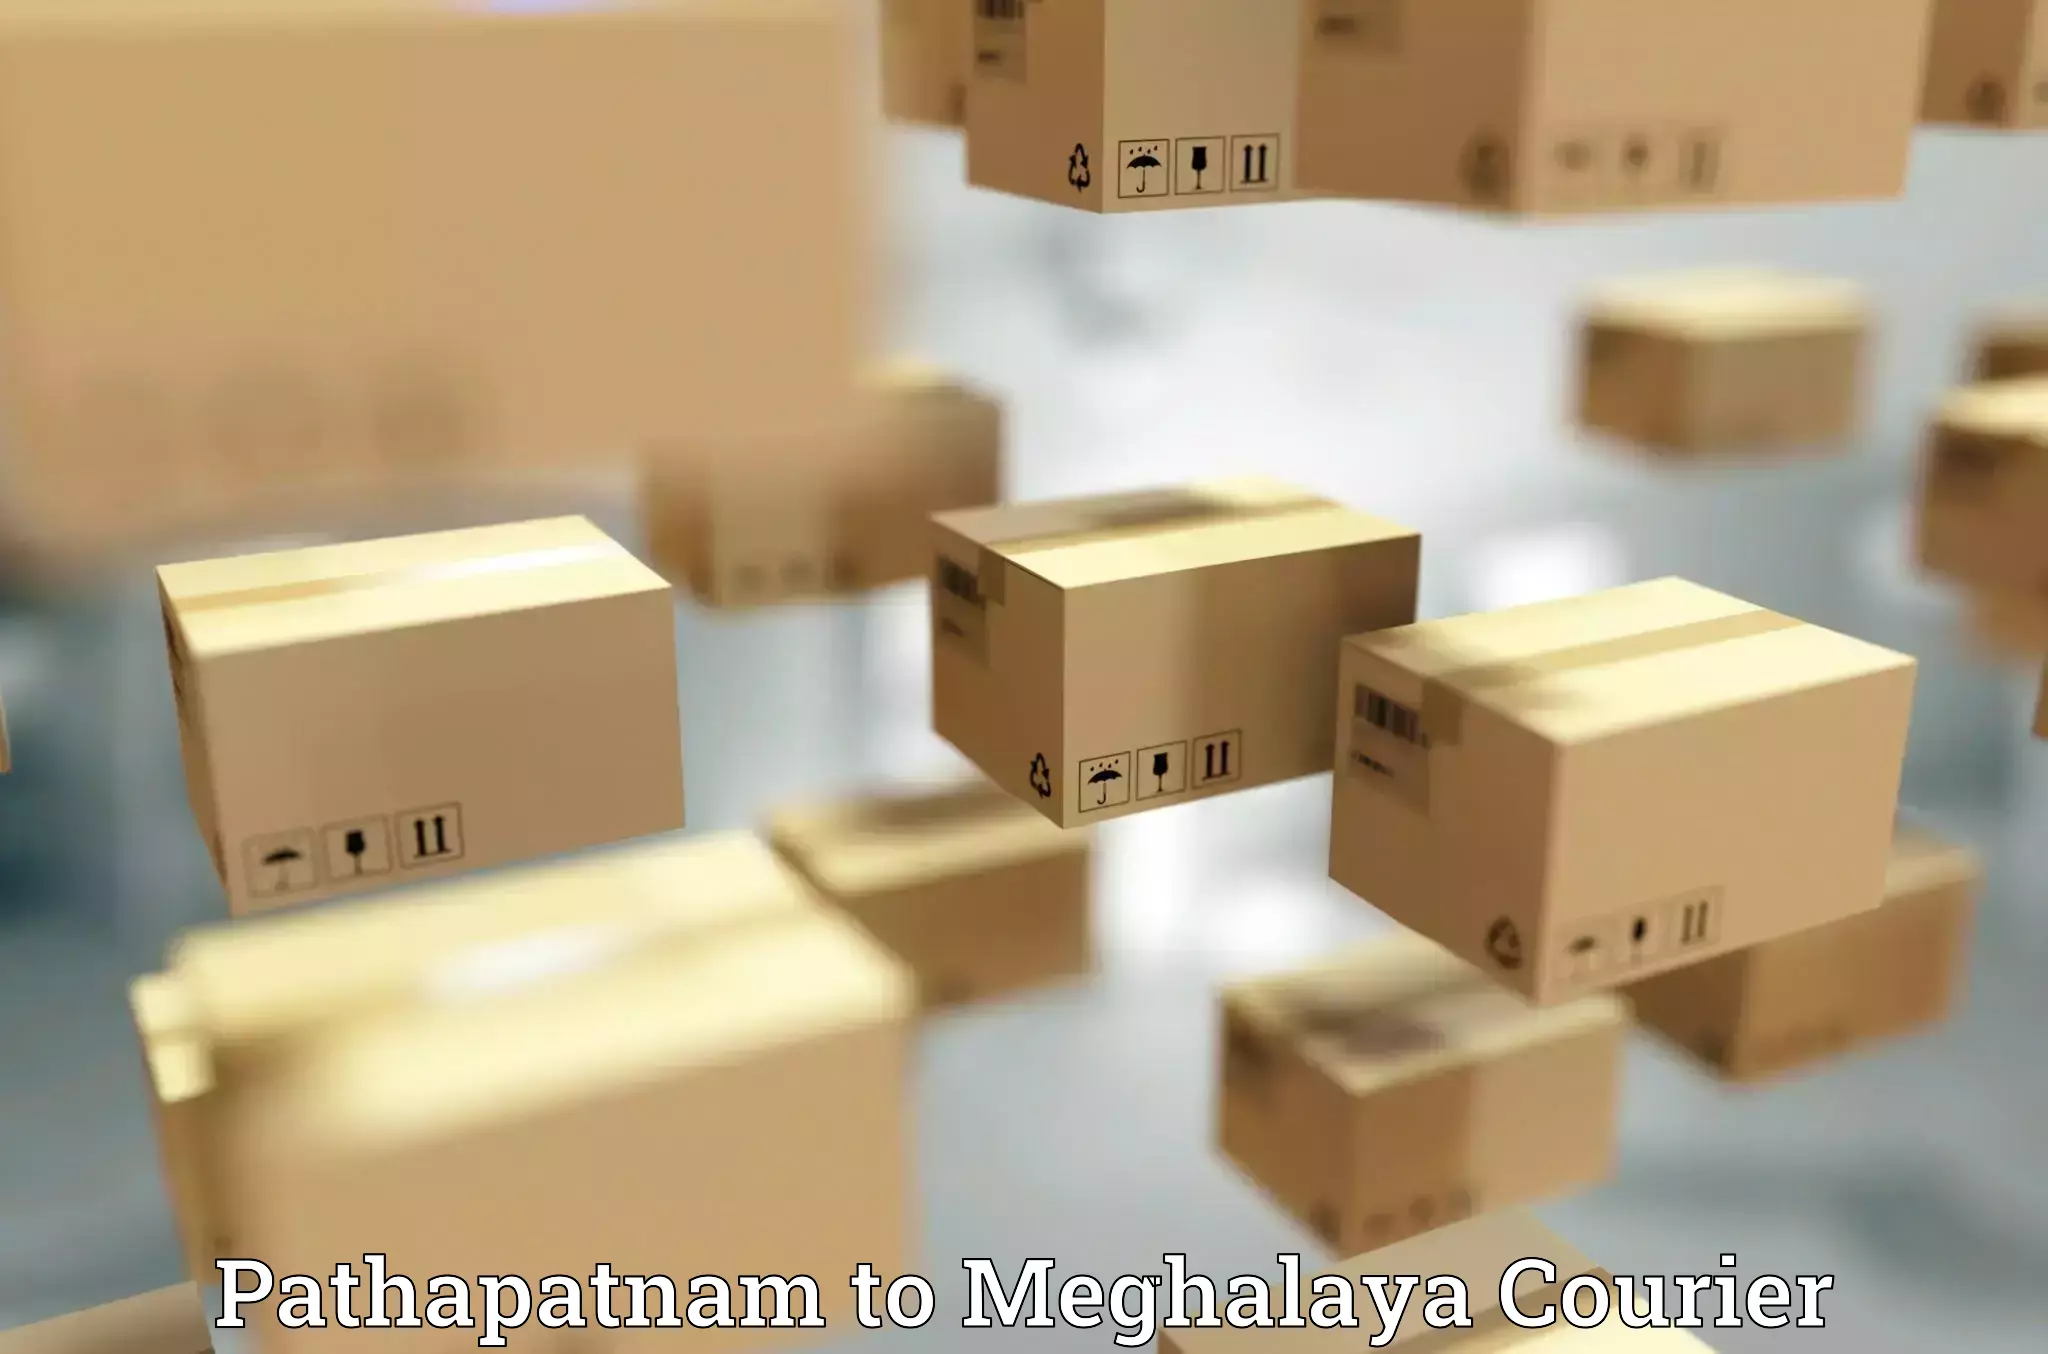 Shipping and handling Pathapatnam to NIT Meghalaya